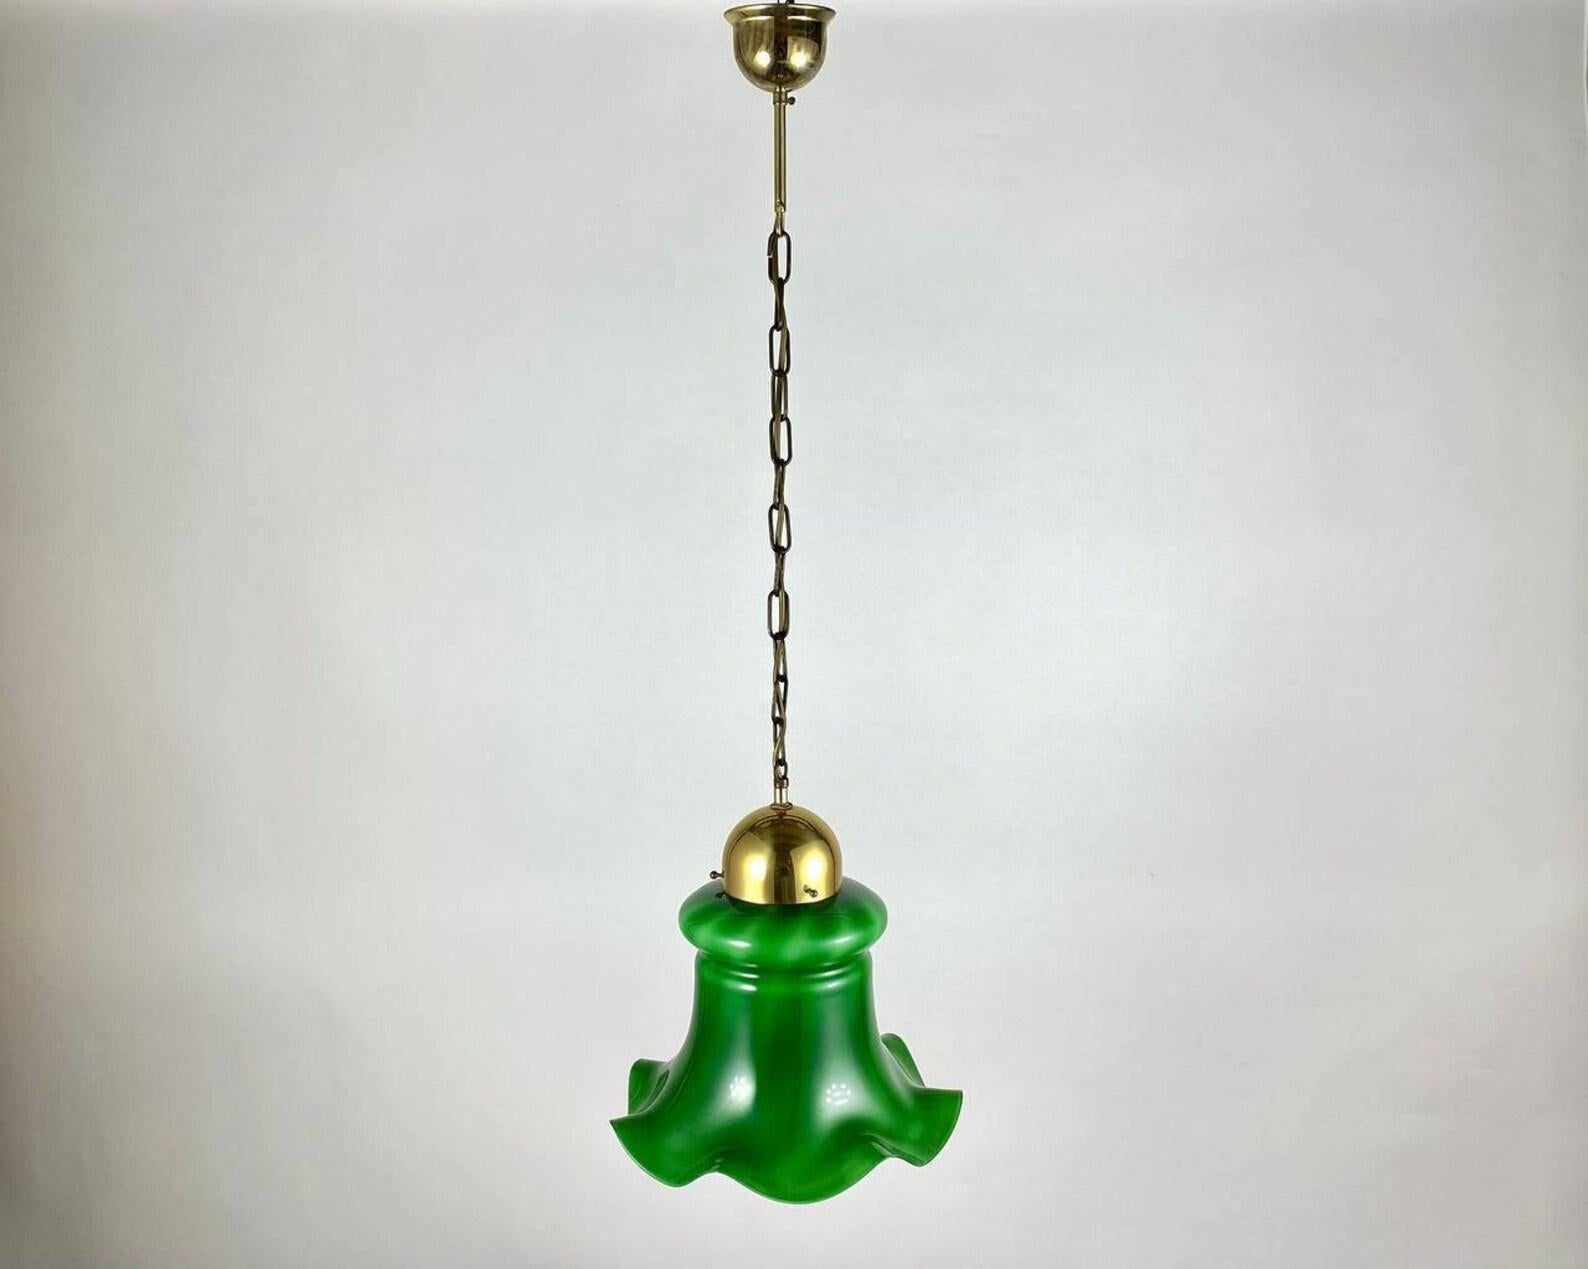 Pendentif en verre vert et laiton doré fabriqué en Belgique, vers les années 1980.

 Cette lampe suspendue élégante et stylée est une solution d'intérieur fonctionnelle. Les parties métalliques de la lampe sont en laiton avec dorure. L'abat-jour a